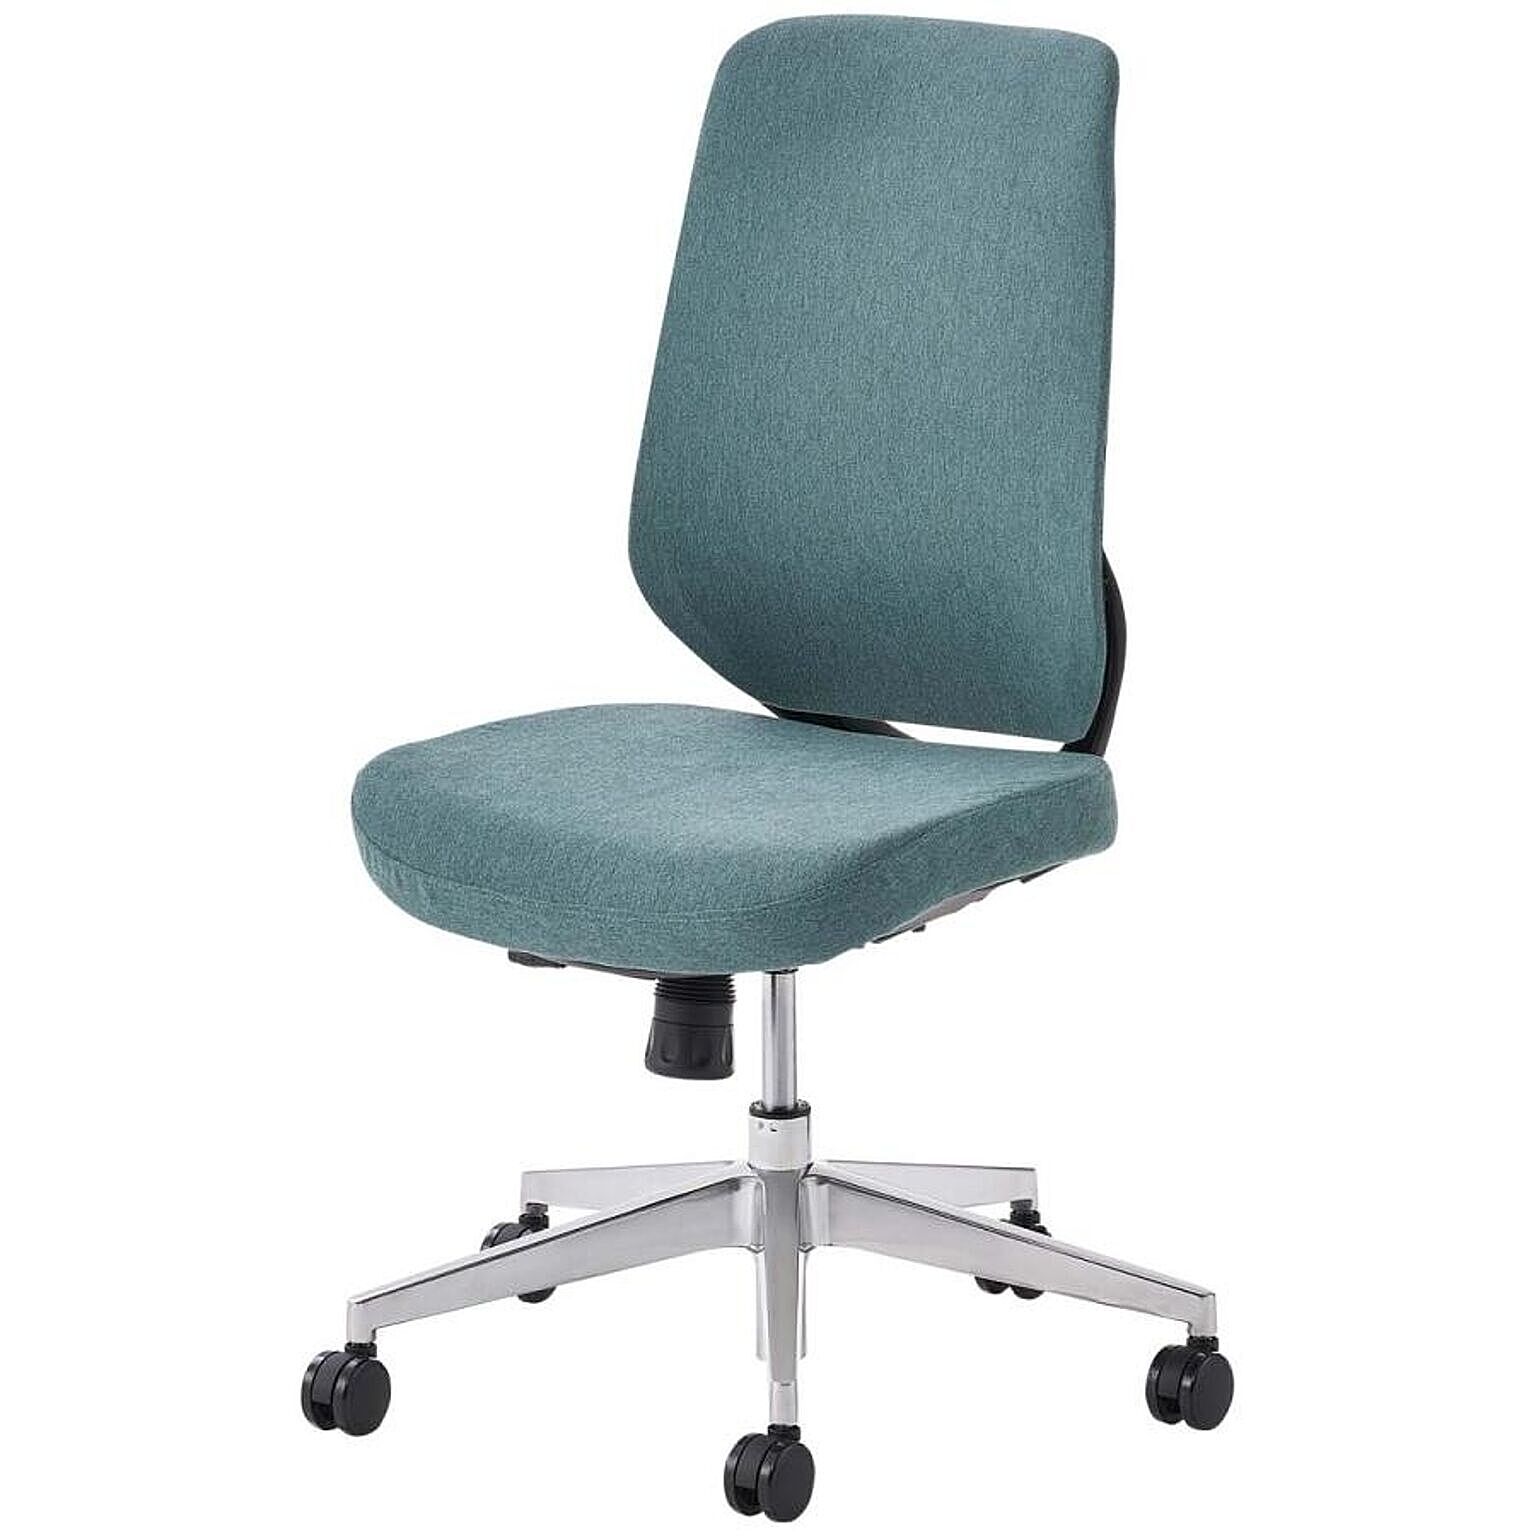 オフィスチェア YS-1 肘なし メッシュチェア/布張りチェア ランバーサポート 人間工学 椅子